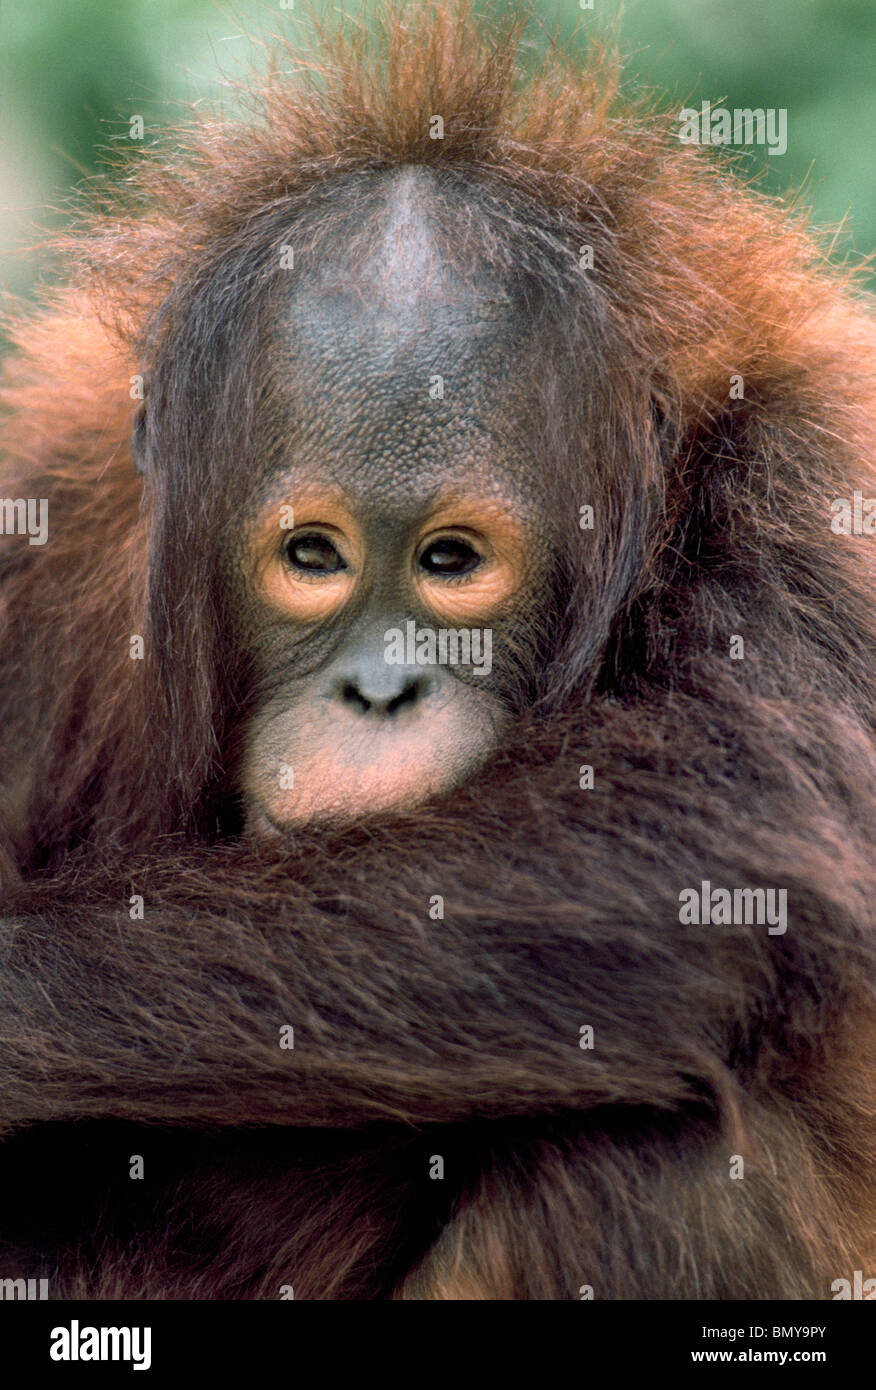 Un pensieroso giovane orangutan dall'isola del Borneo nel sud-est asiatico guarda i visitatori dello Zoo di San Diego in California del Sud, Stati Uniti d'America. Foto Stock